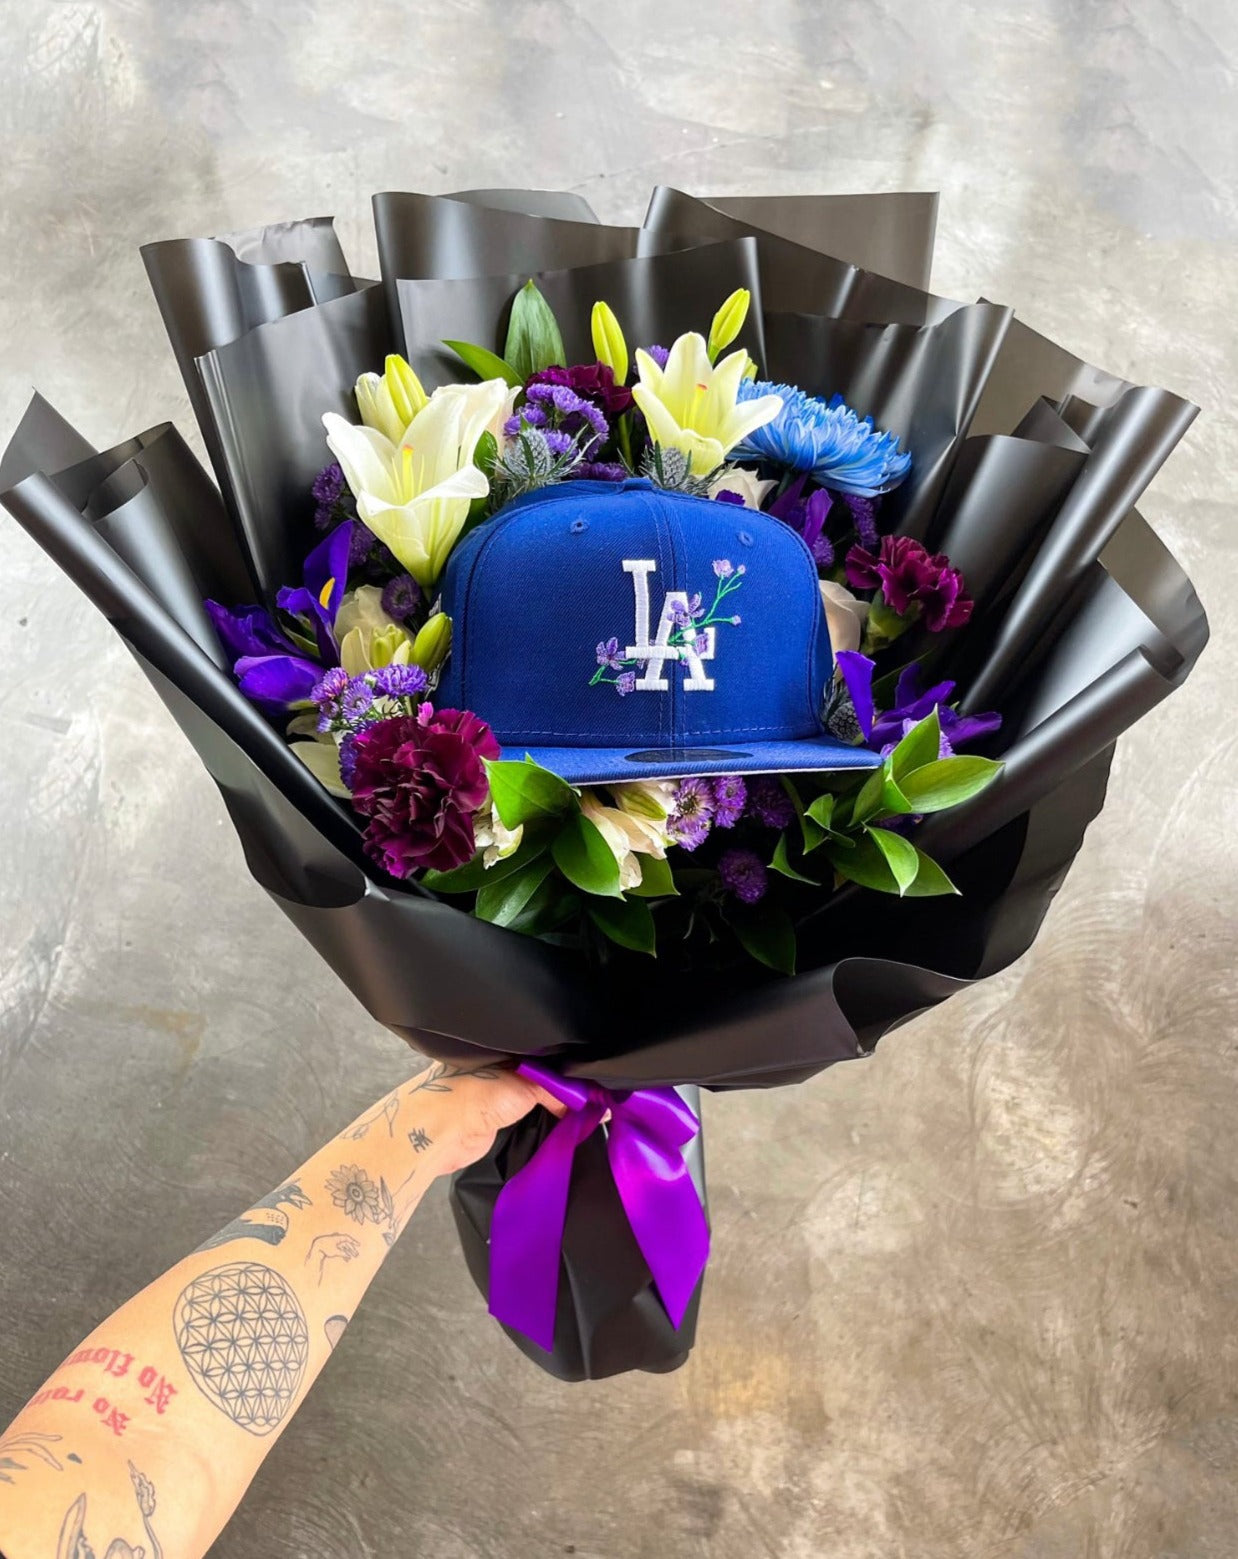 LA Hat Bouquet